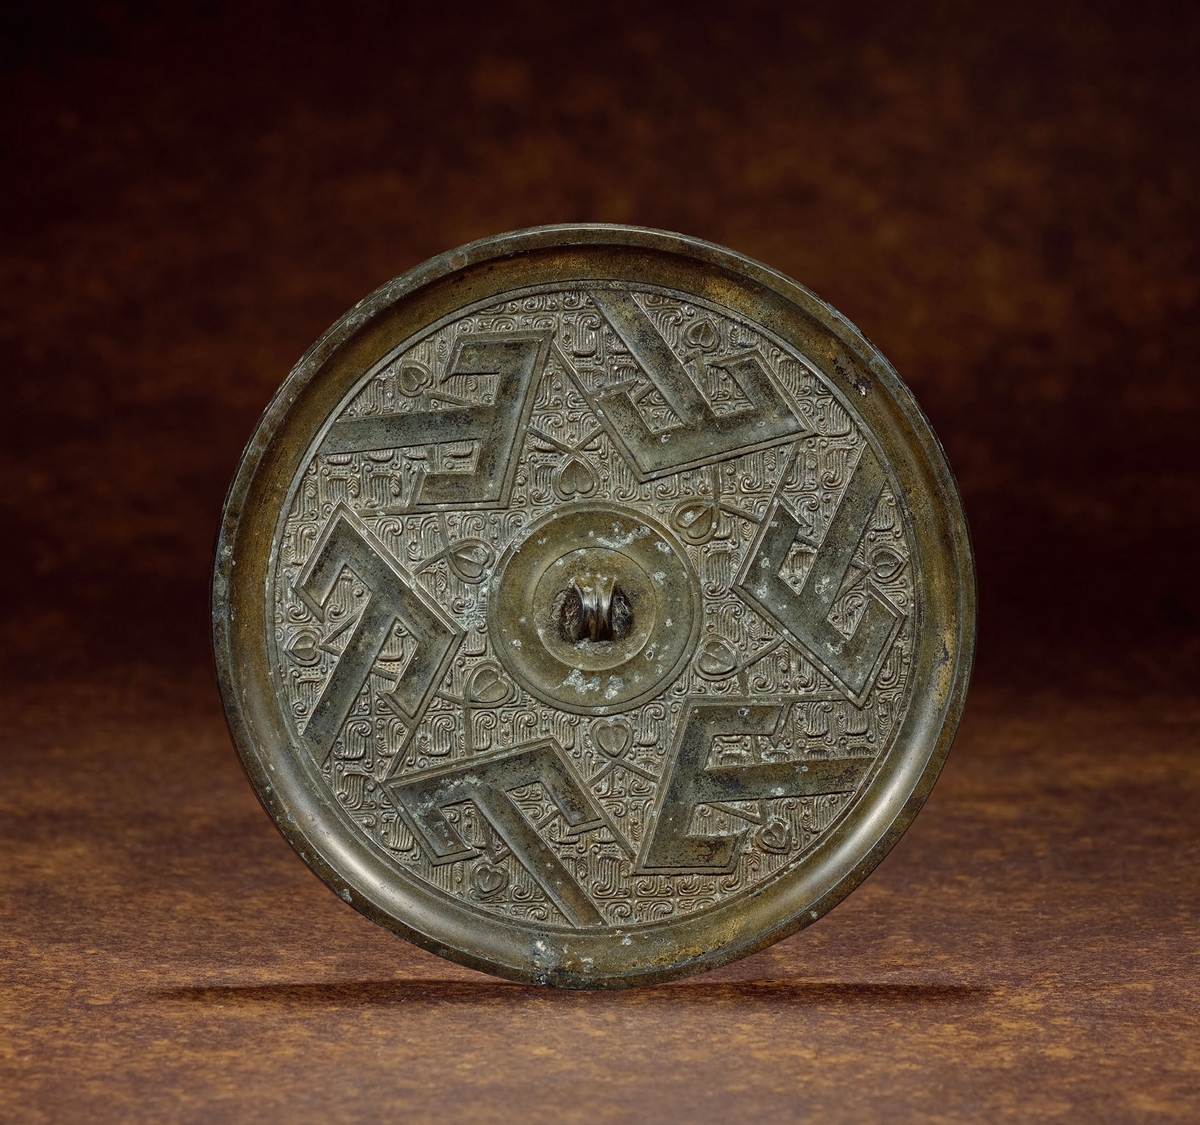 战国·青铜六山羽翅花叶镜 说明: 此镜圆形,弦纹钮,圆钮座